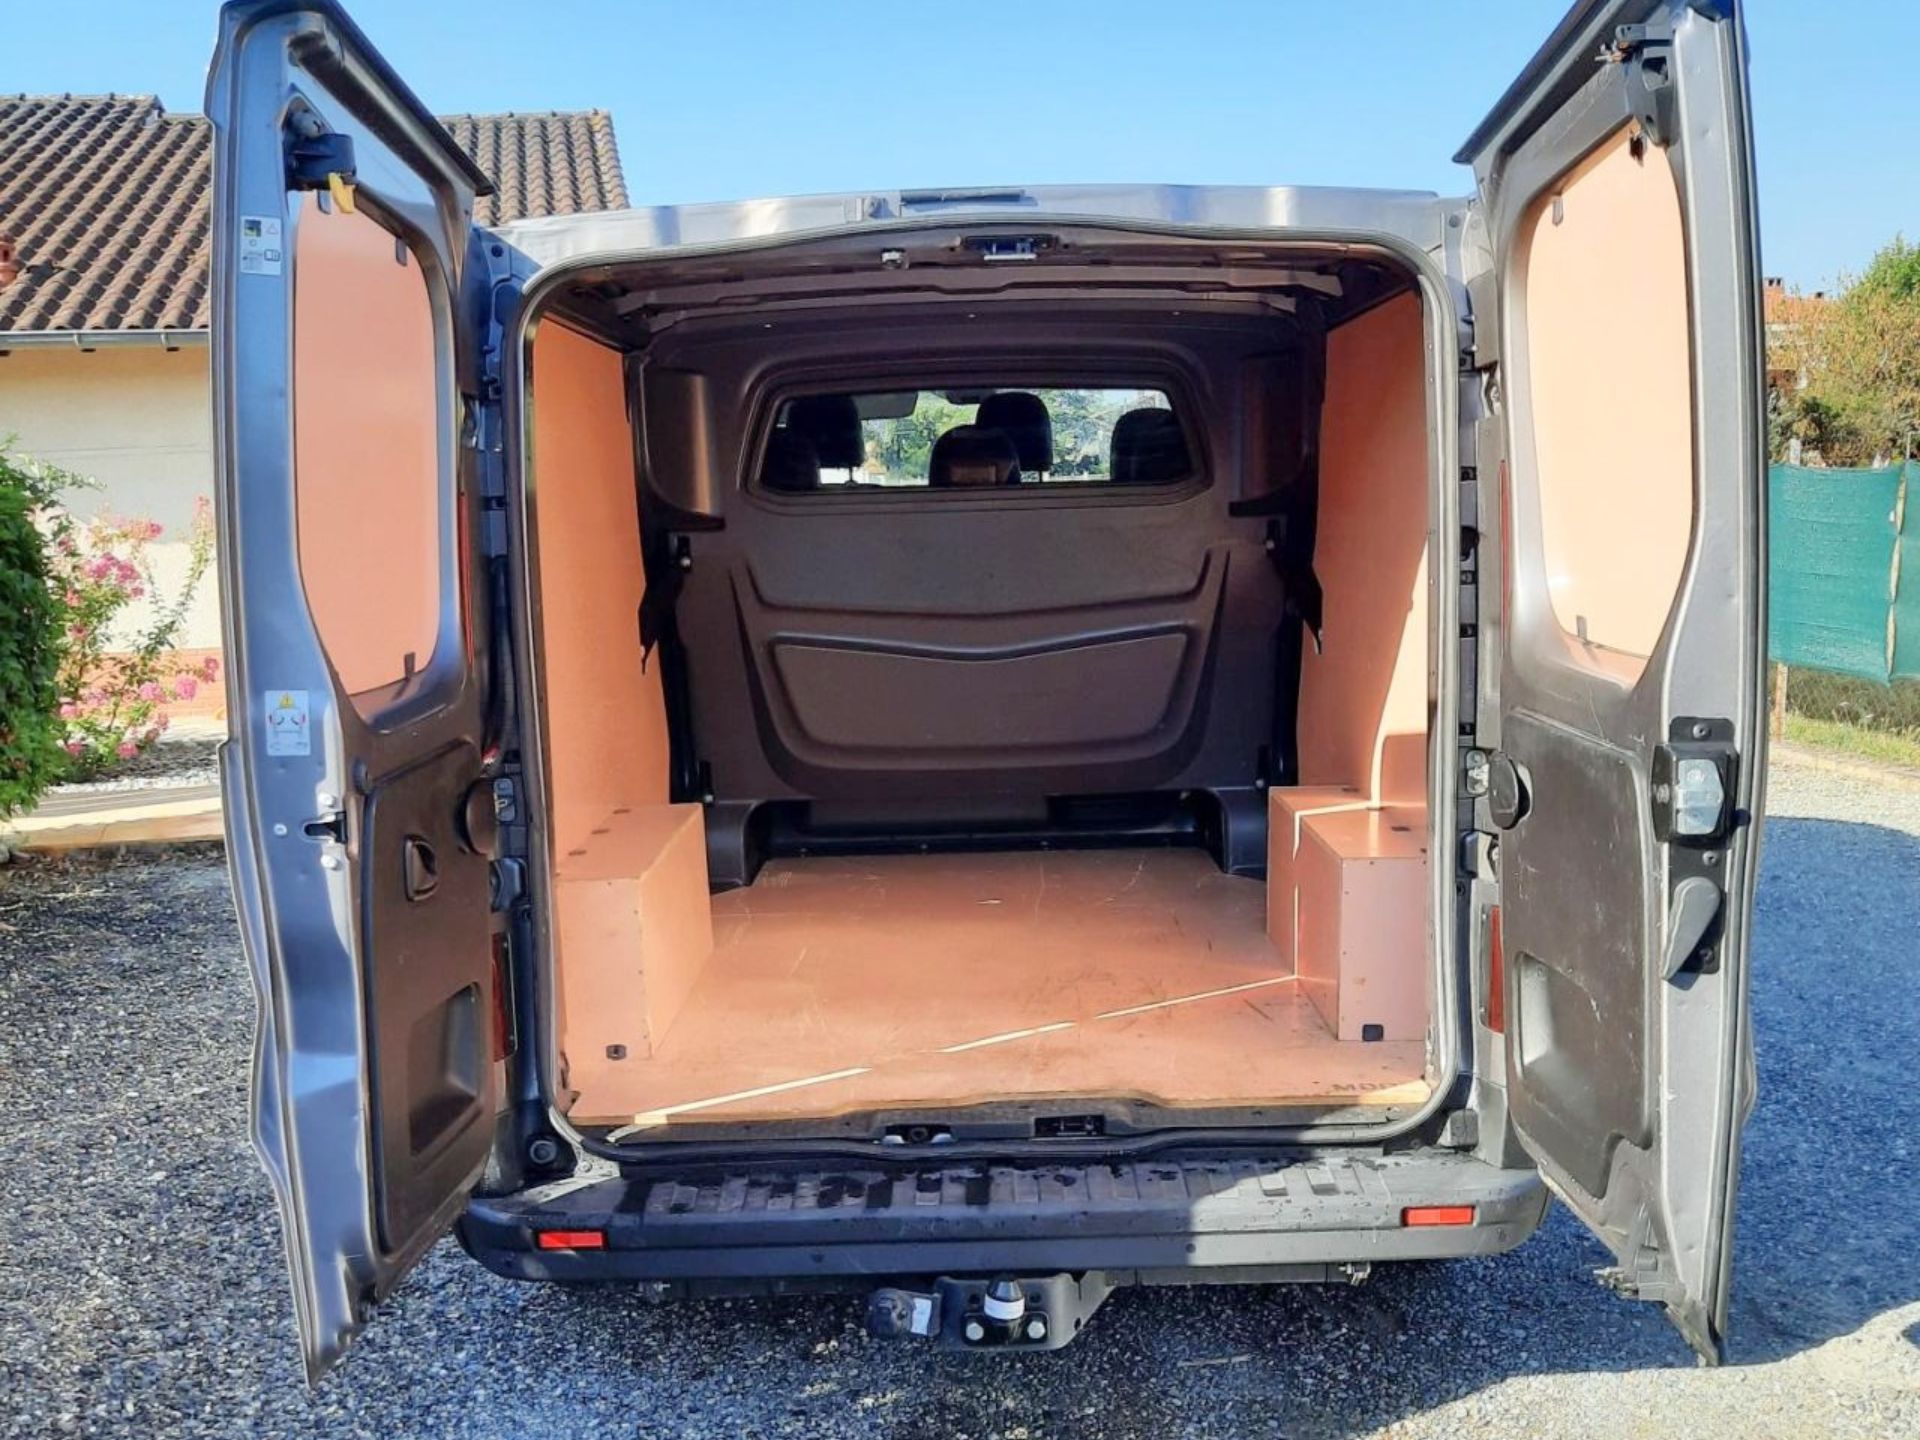 Location en LLD d'un fourgon double cabine Fiat Talento pour un fabricant de meubles à Sarlat-la-Canéda, en Dordogne (24) 8